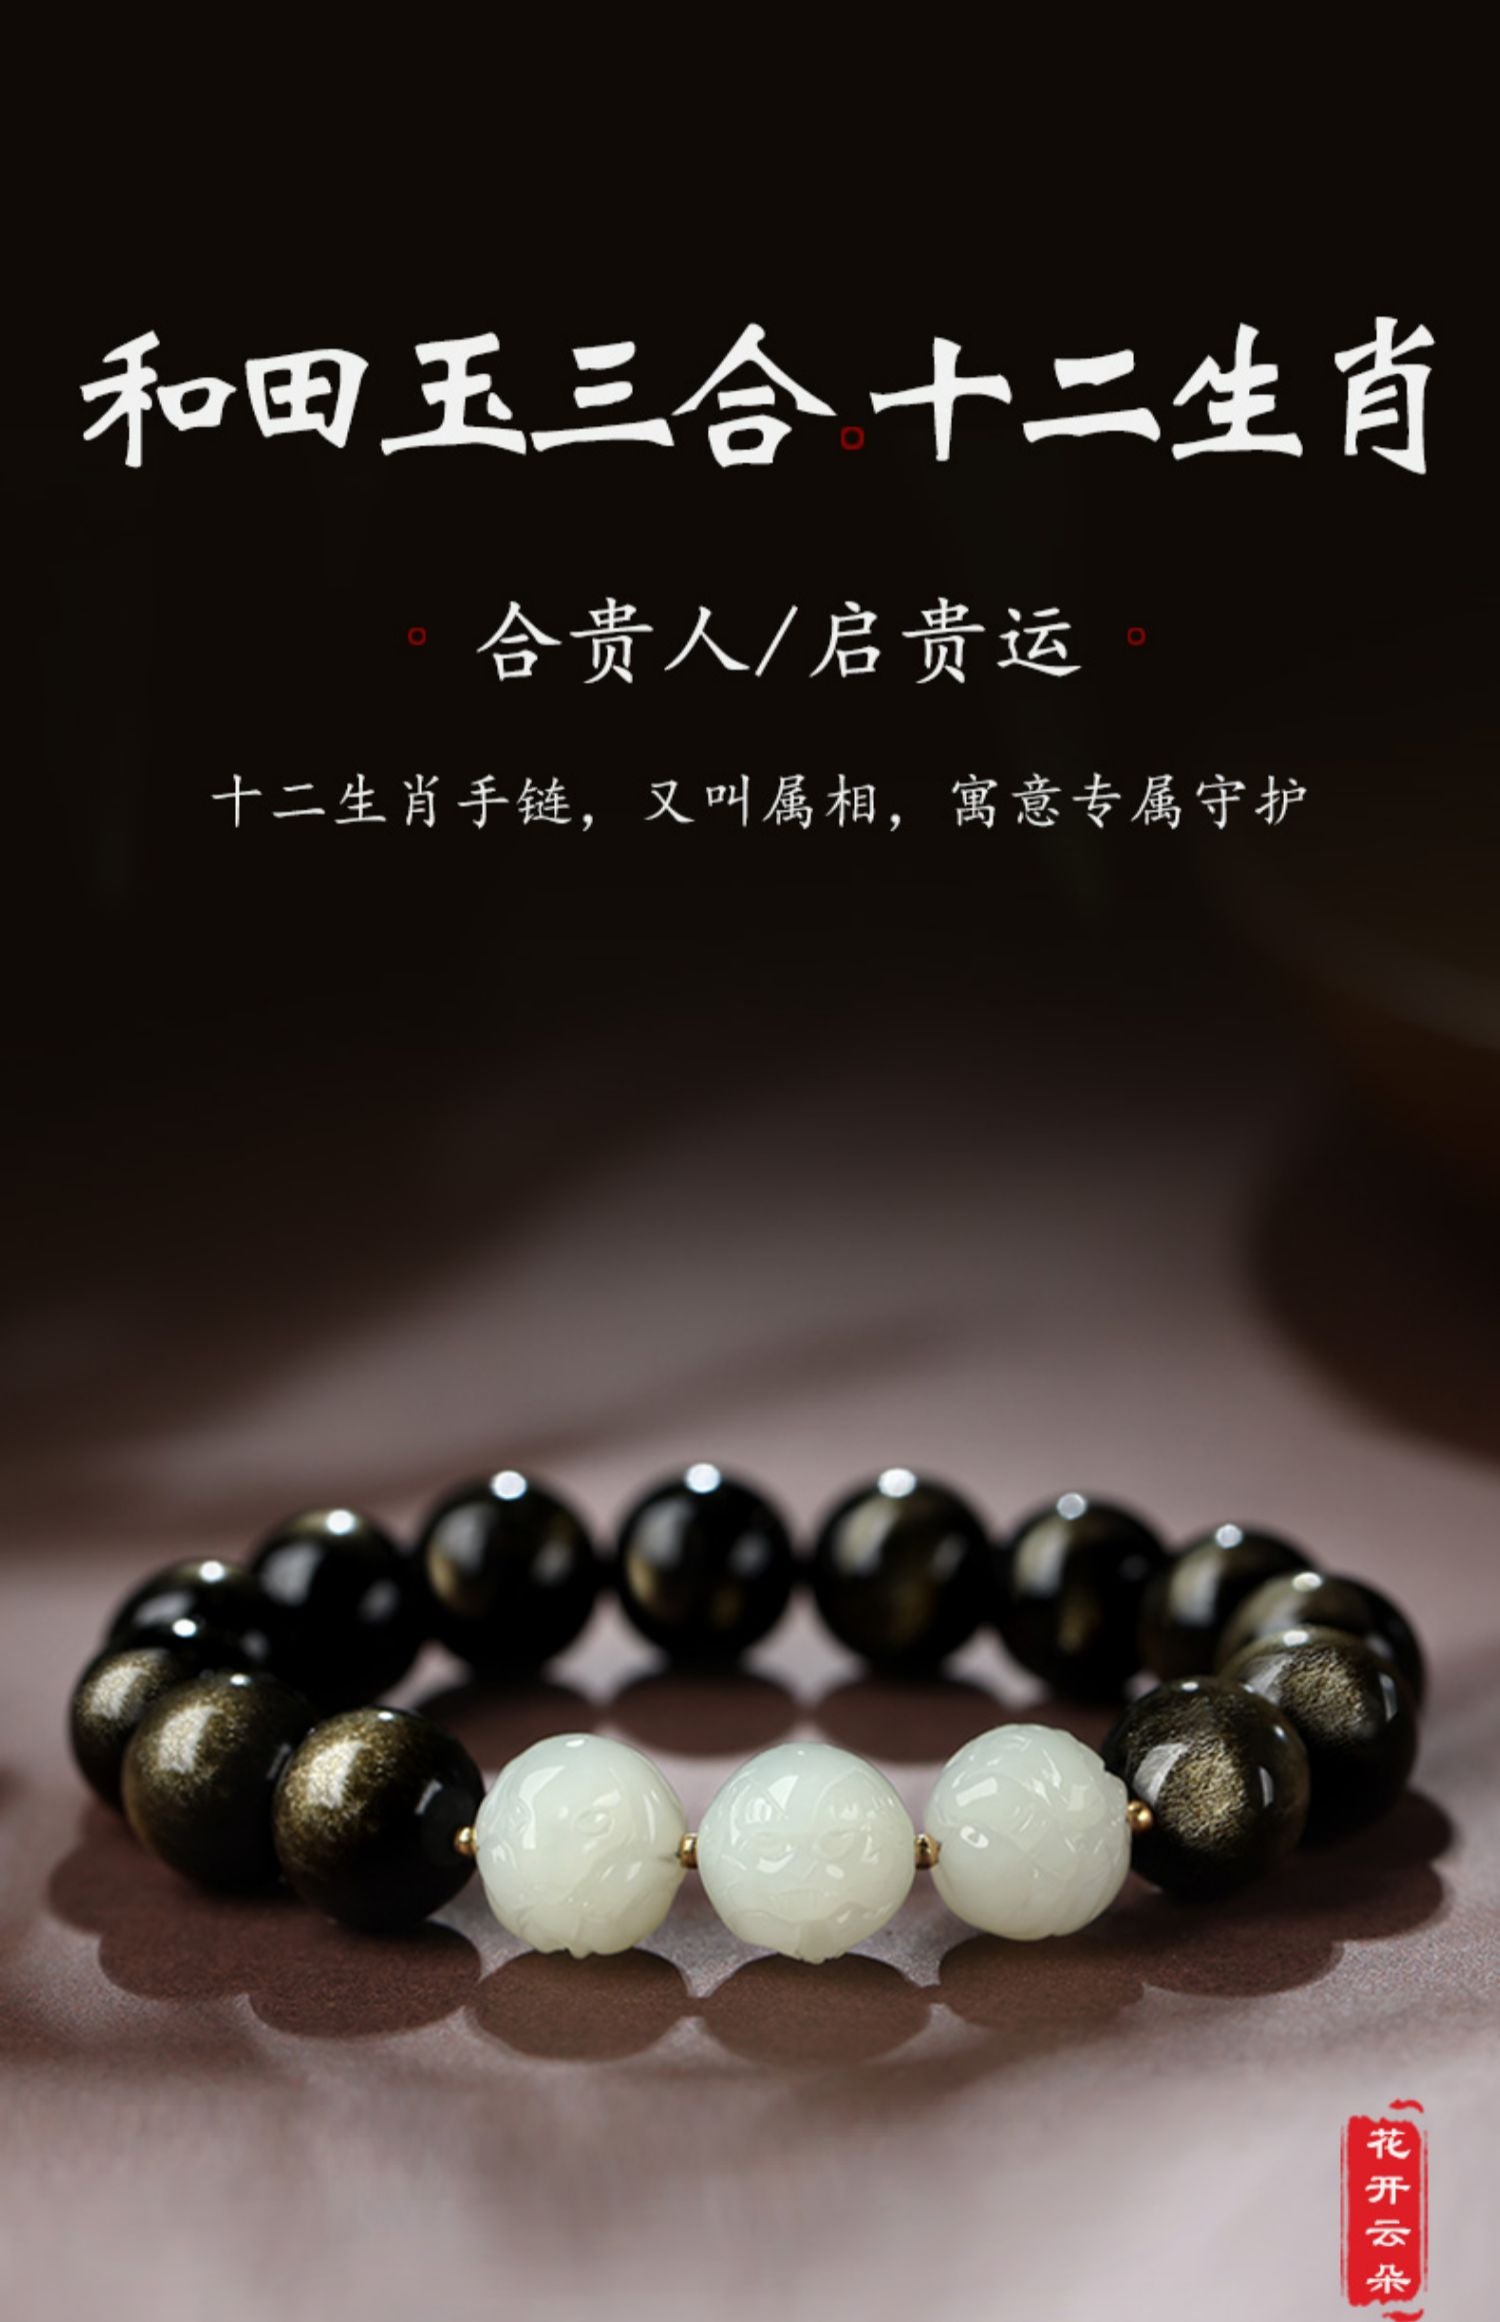 Gold Sheen Obsidian Hetian Jade Zodiac Bracelet